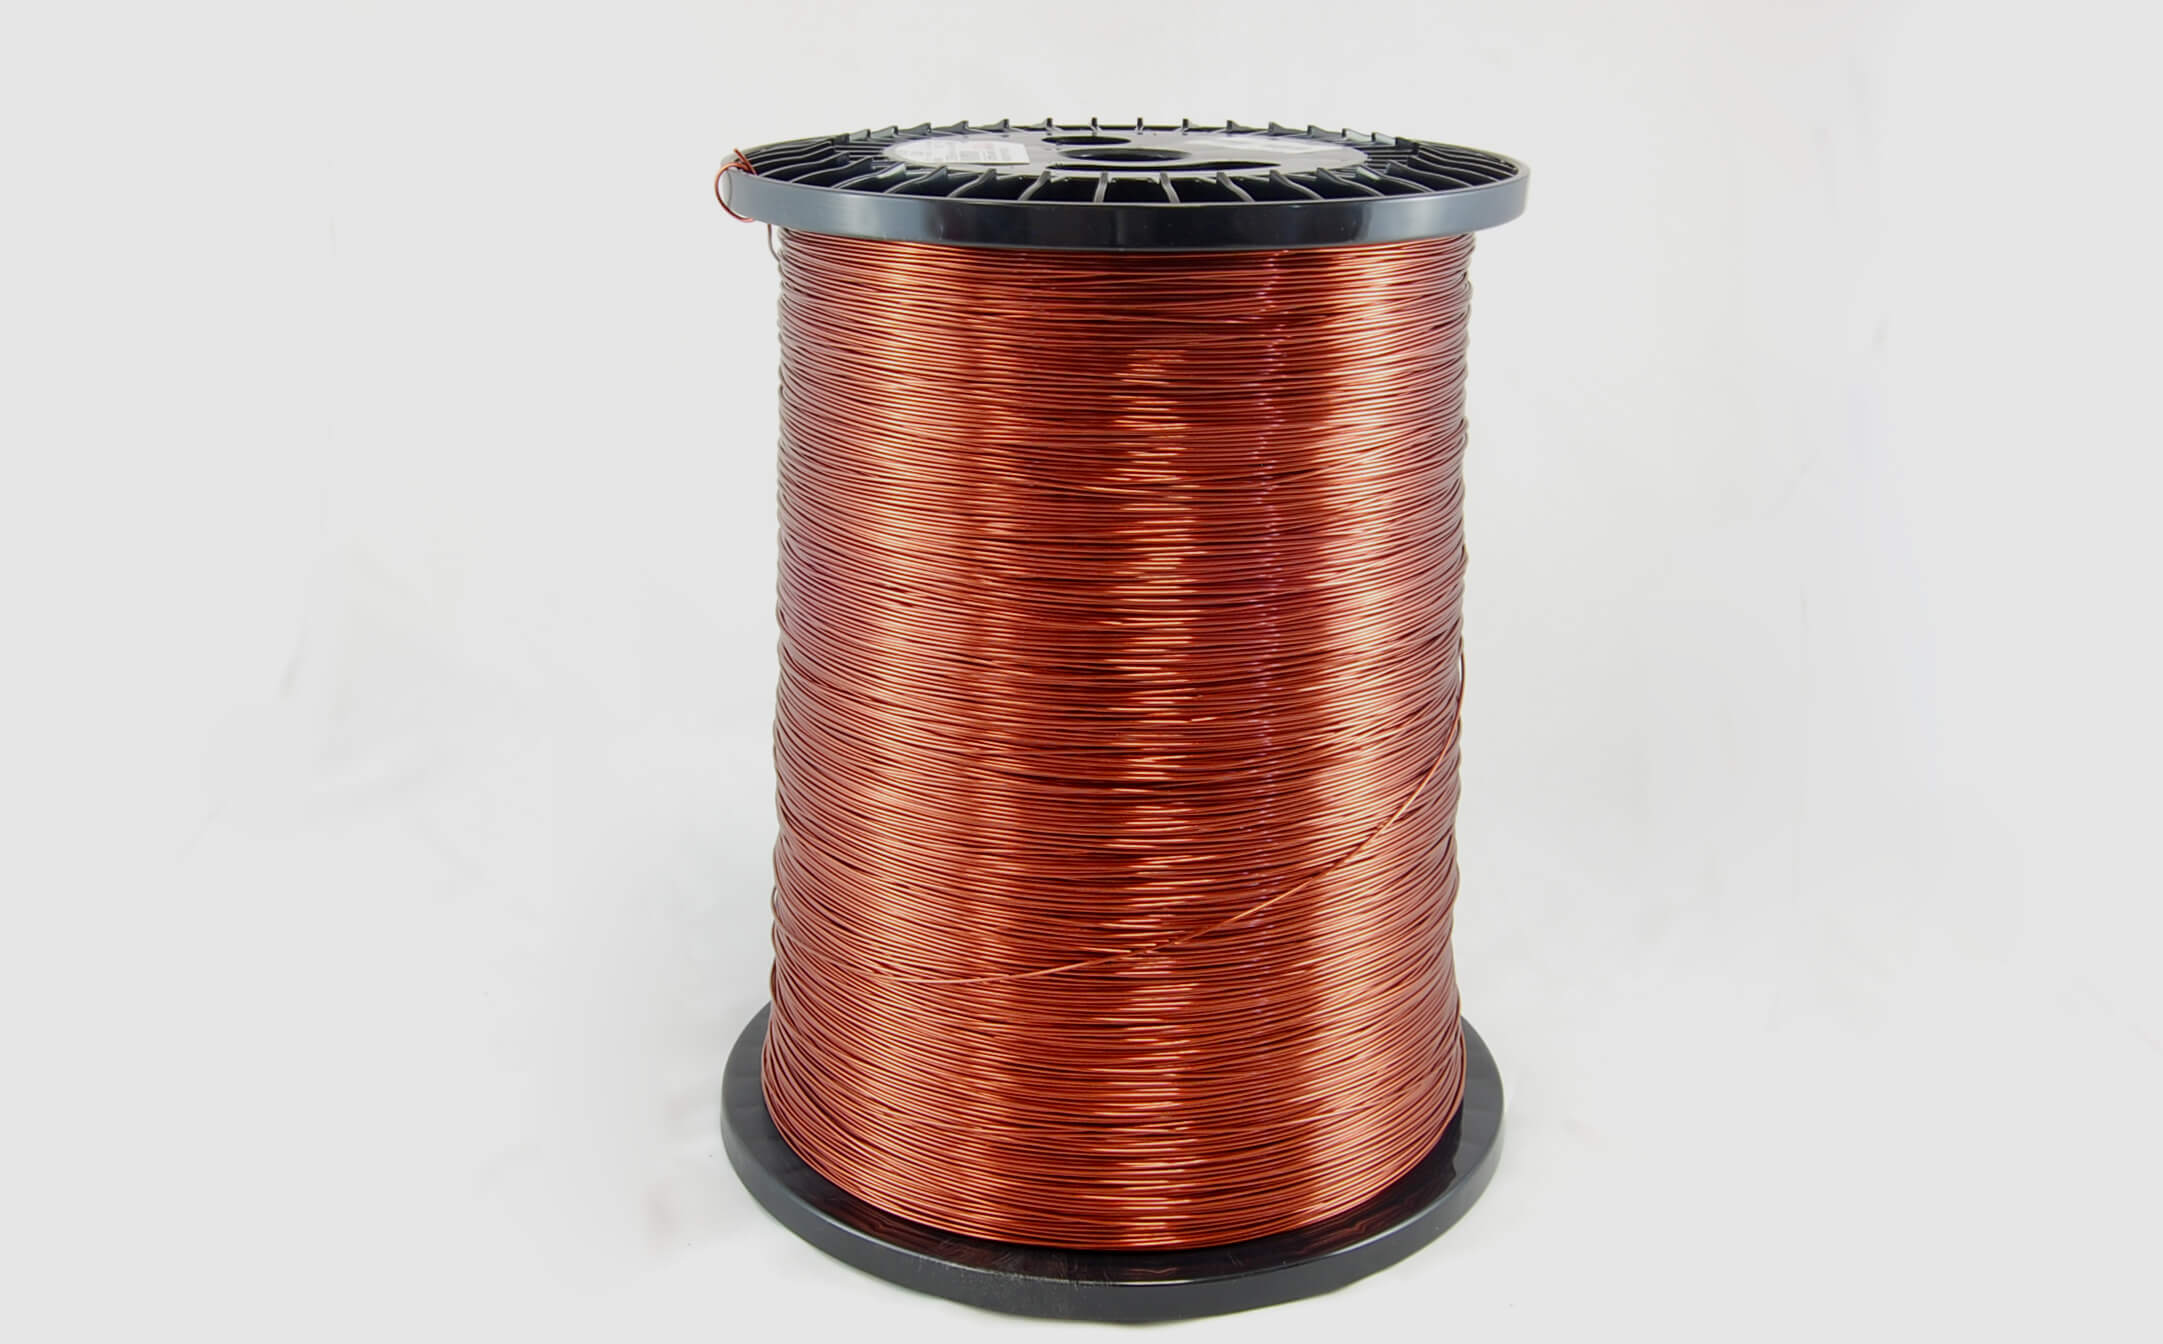 #24 Heavy Super Hyslik 200 Round HTAIH MW 35 Copper Magnet Wire 200°C, copper, 85 LB pail (average wght.)